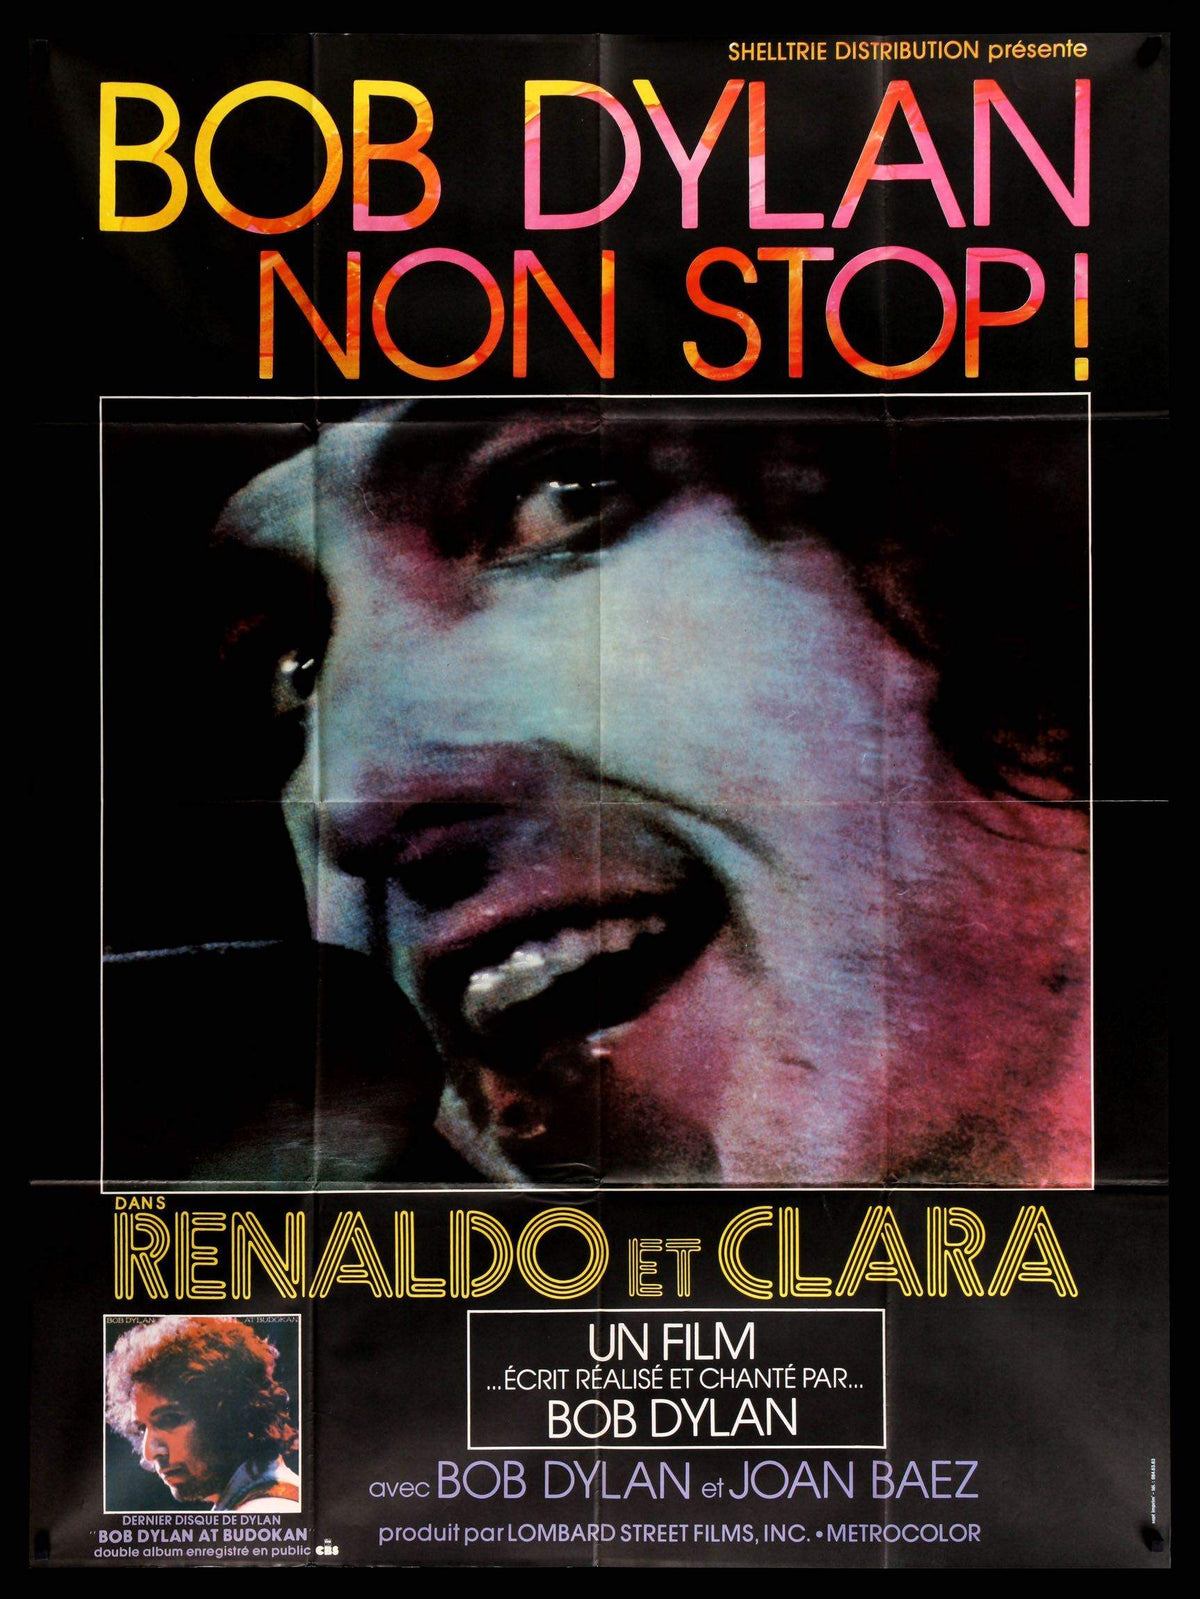 Renaldo and Clara (1978) original movie poster for sale at Original Film Art